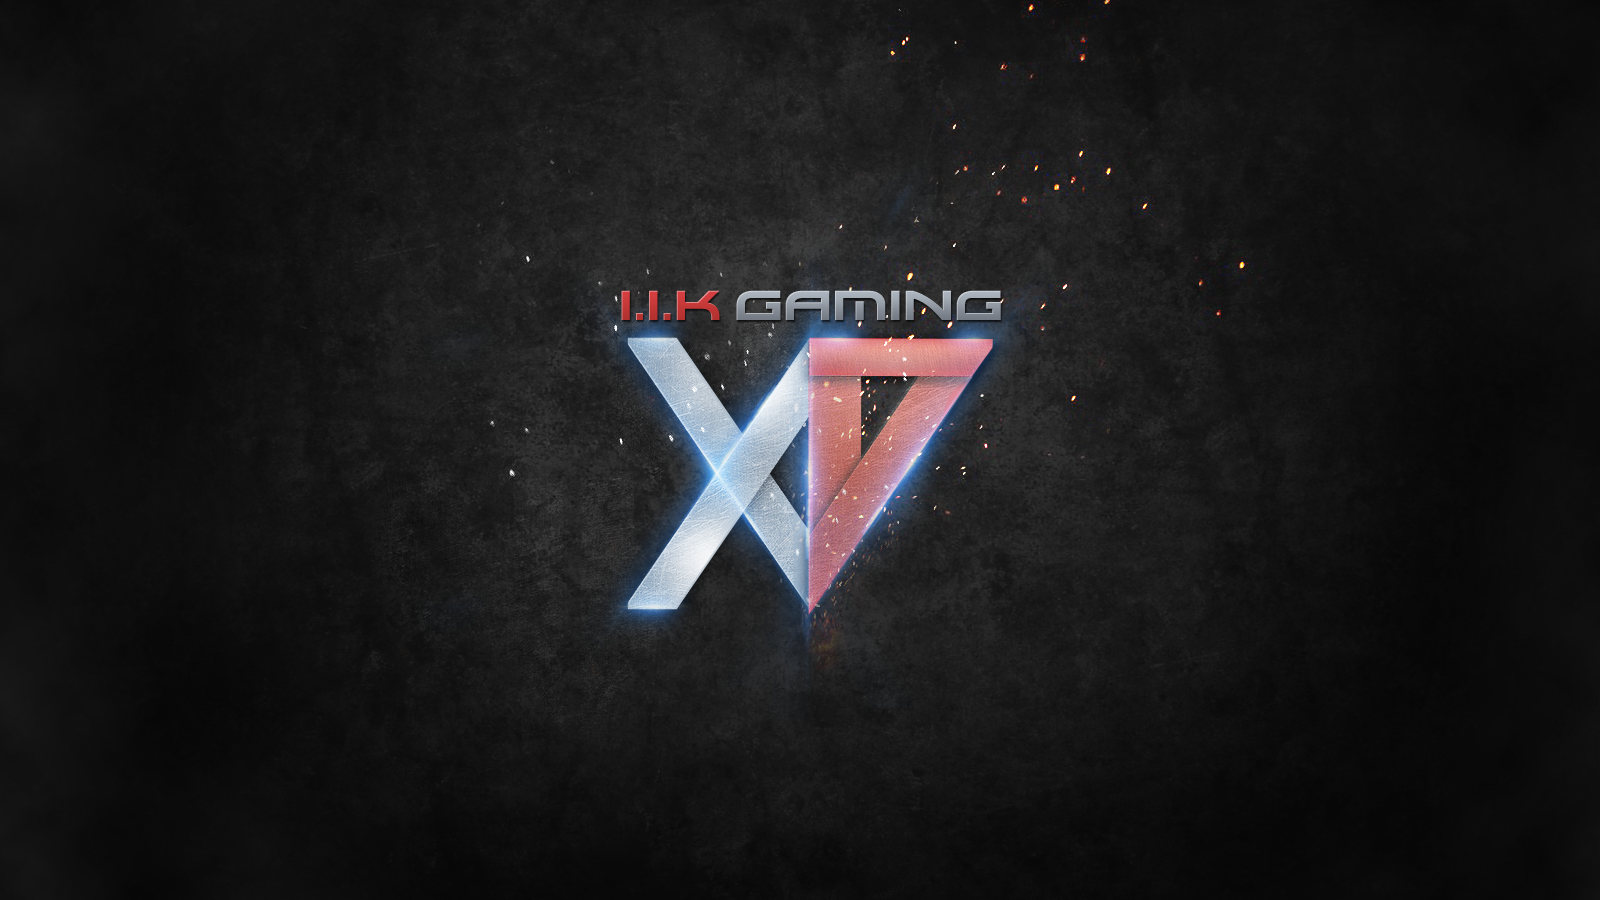 I.I.K Gaming Logo 2 by Fisherz on DeviantArt.